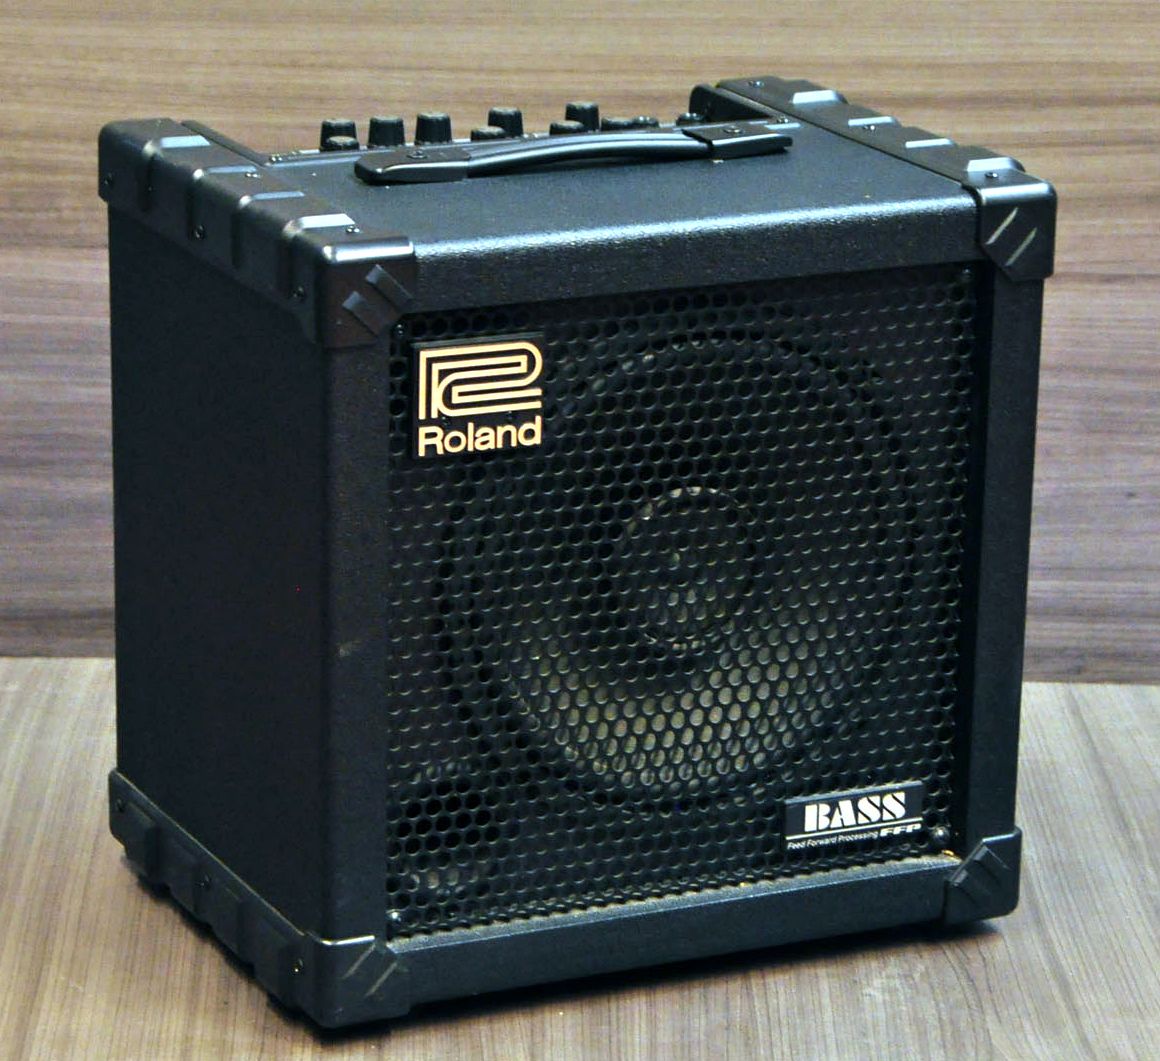 ローランド CUBE BASS amp - fishkabob.com